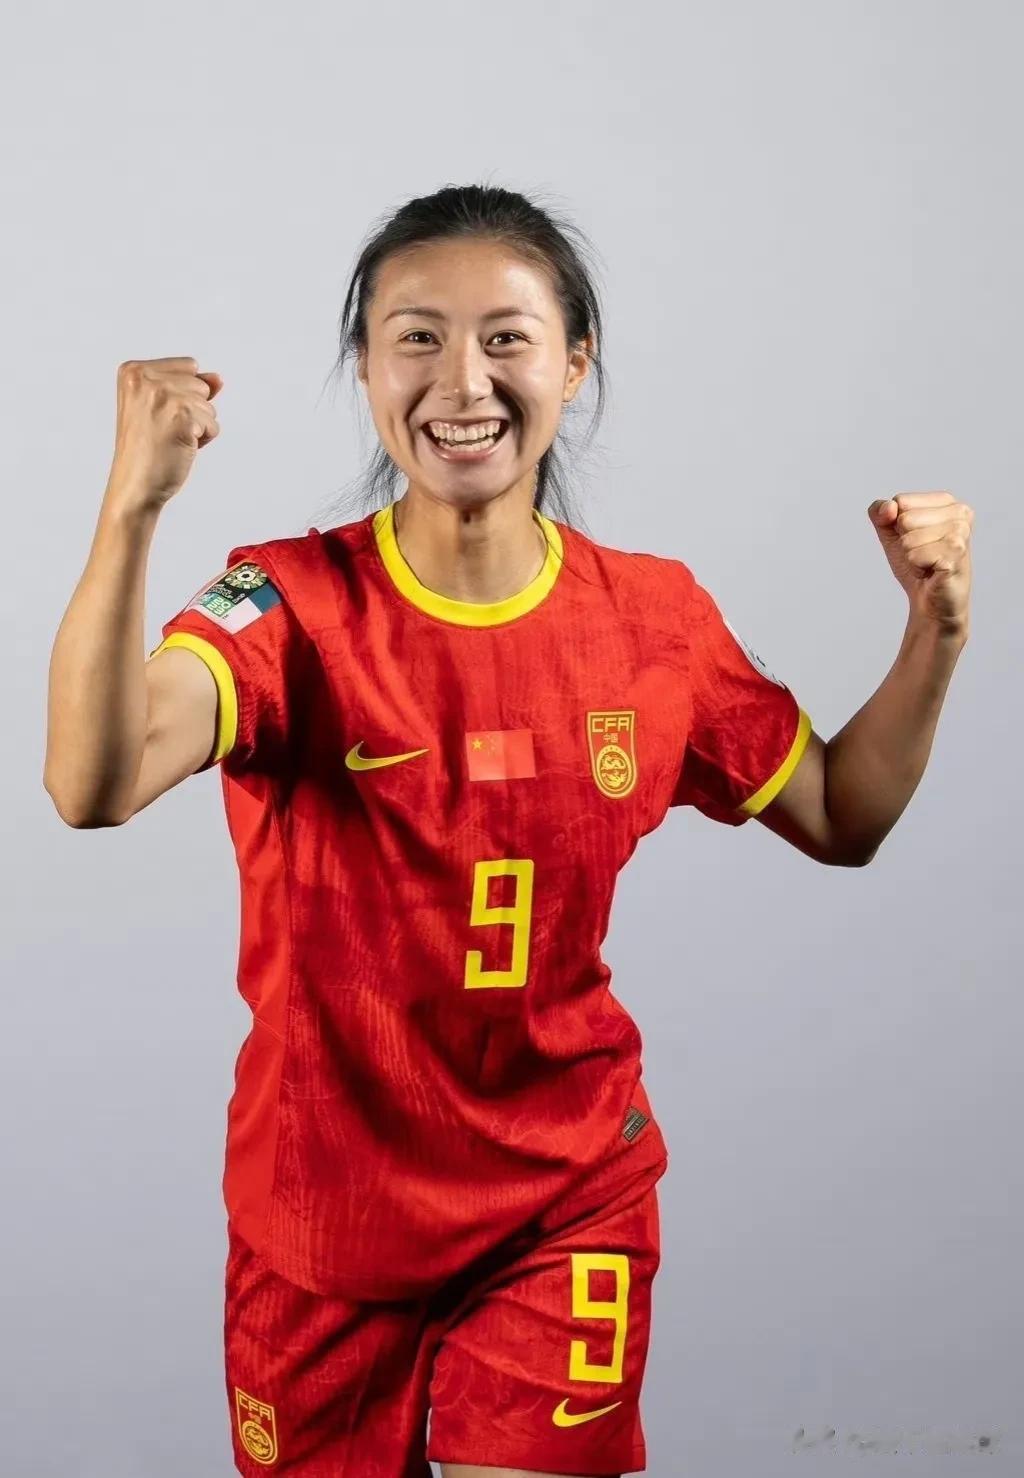 插播一条足球，给中国姑娘加油！祝中国姑娘22号世界杯首场凯旋！

分享一下姑娘们(7)